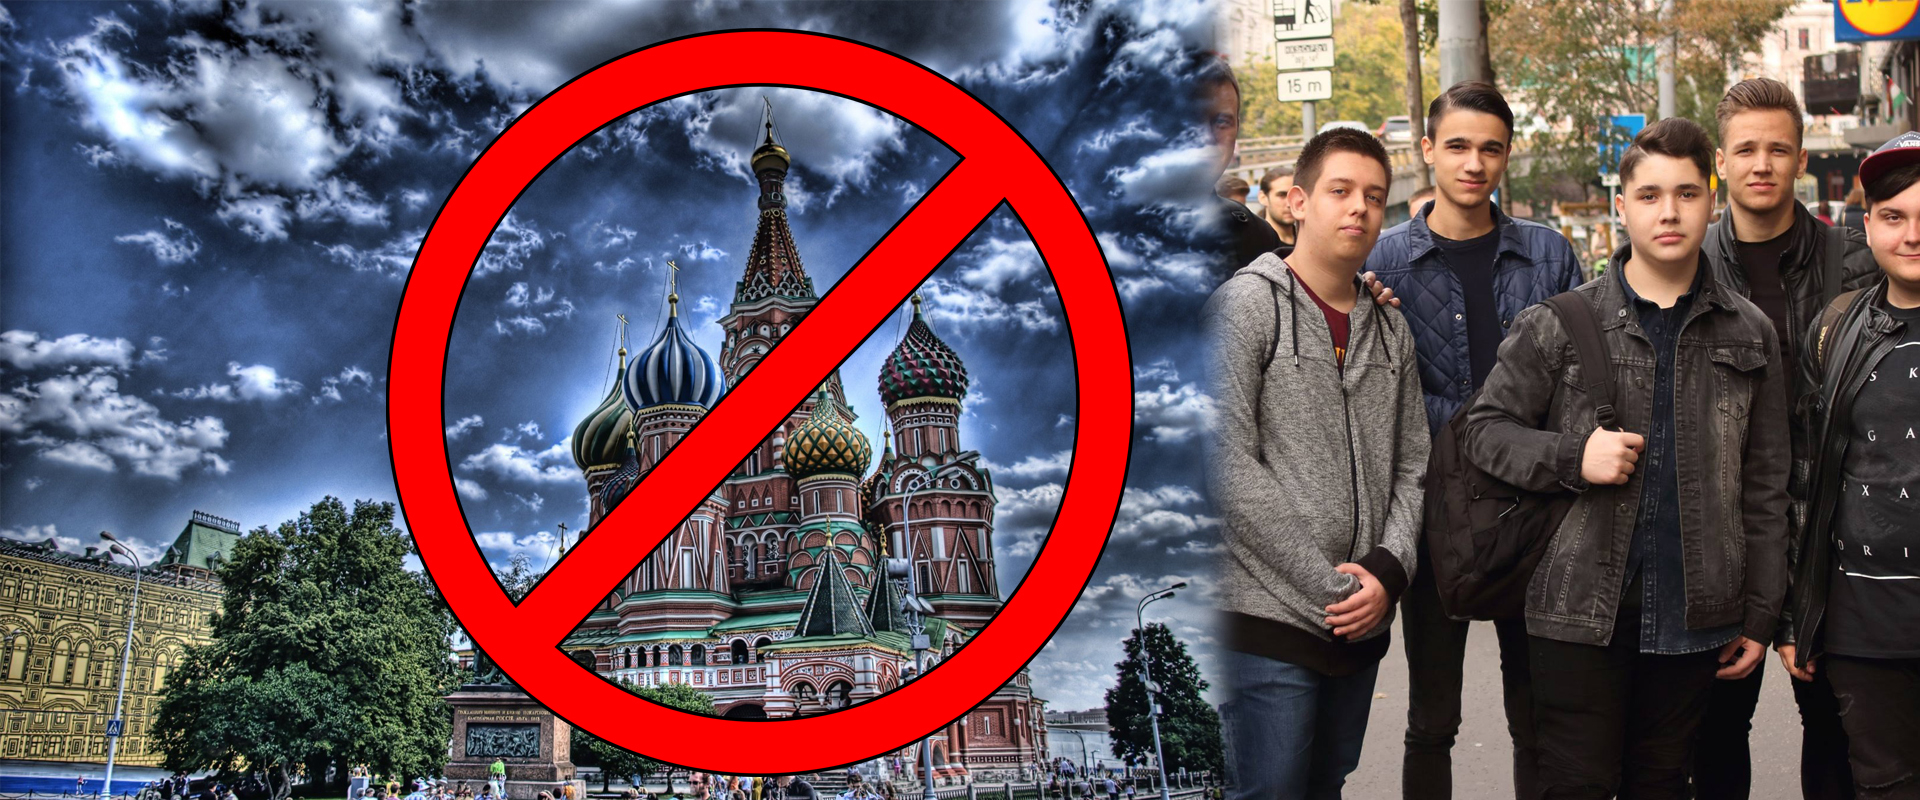 Az európai szervert képviselné, szülei mégsem engedték el a moszkvai döntőre!